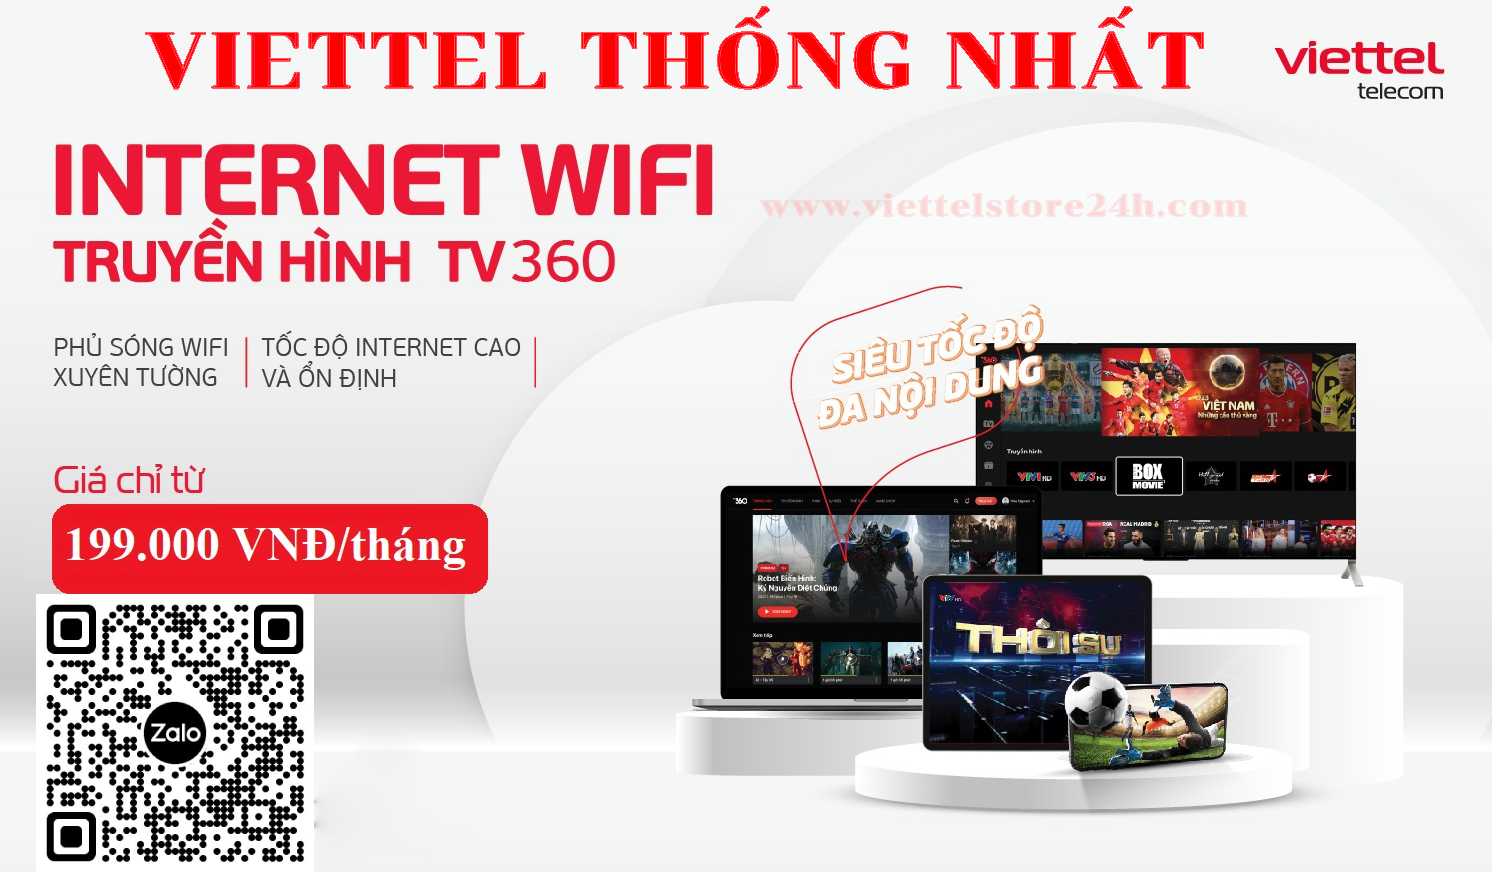 Gói cước wifi & truyền hình Viettel Thống Nhất